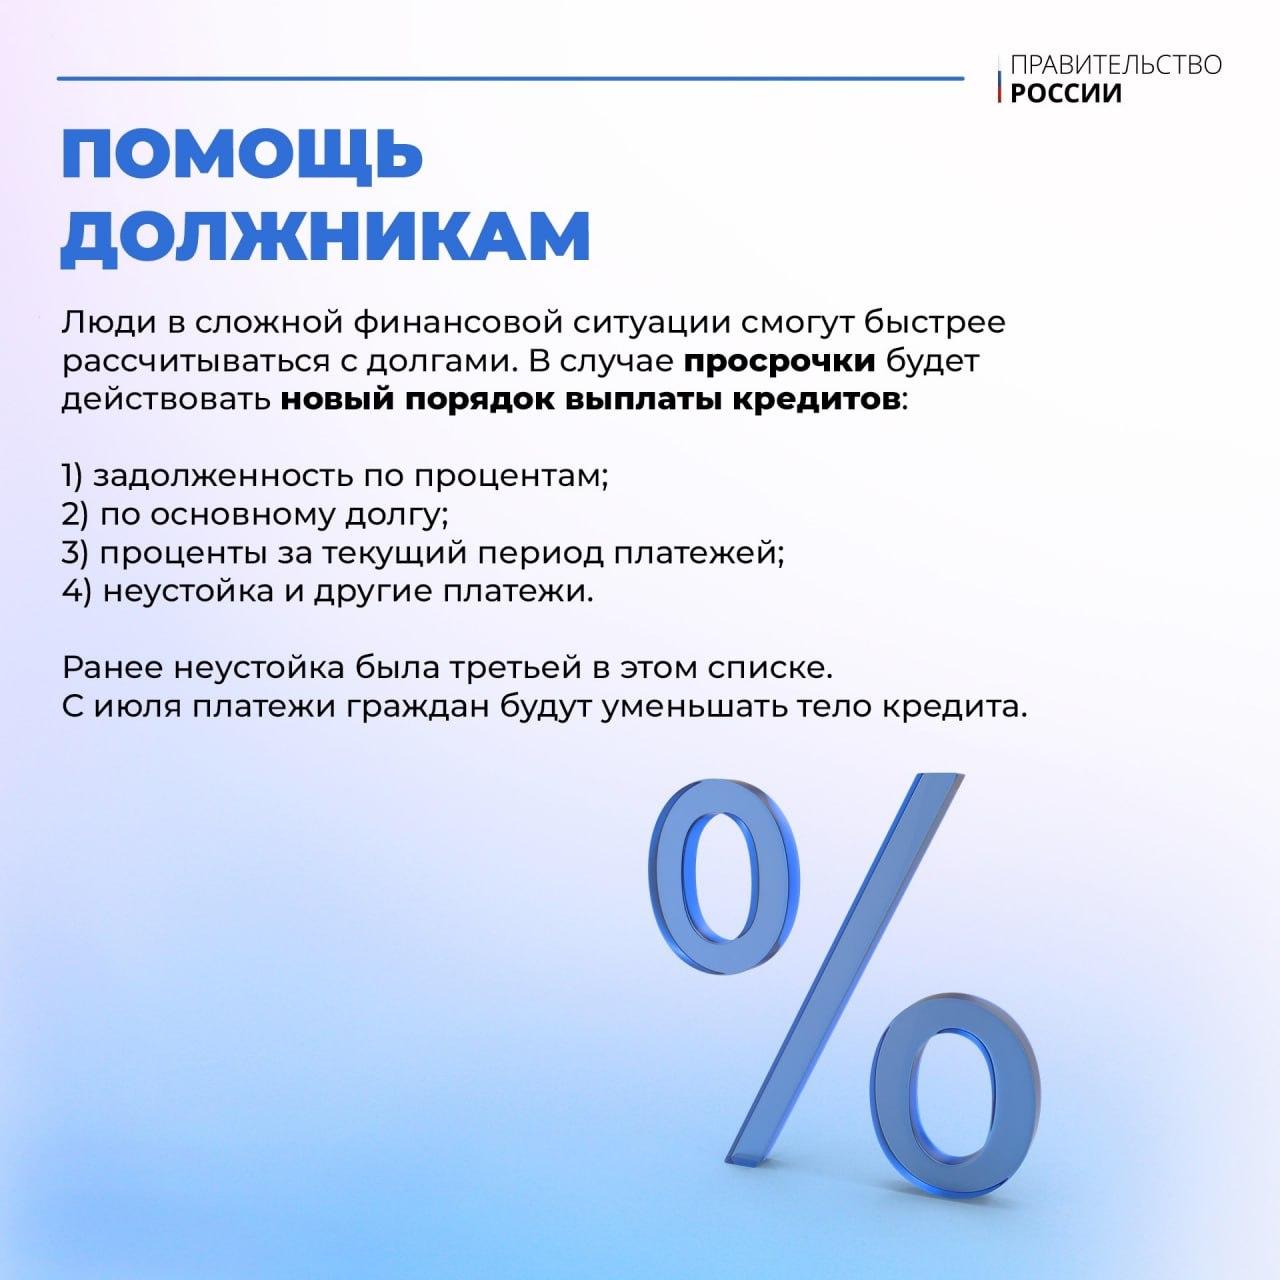 С 1 июля изменится порядок погашения задолженности перед банками для россиян, оказавшихся в сложной финансовой ситуации.